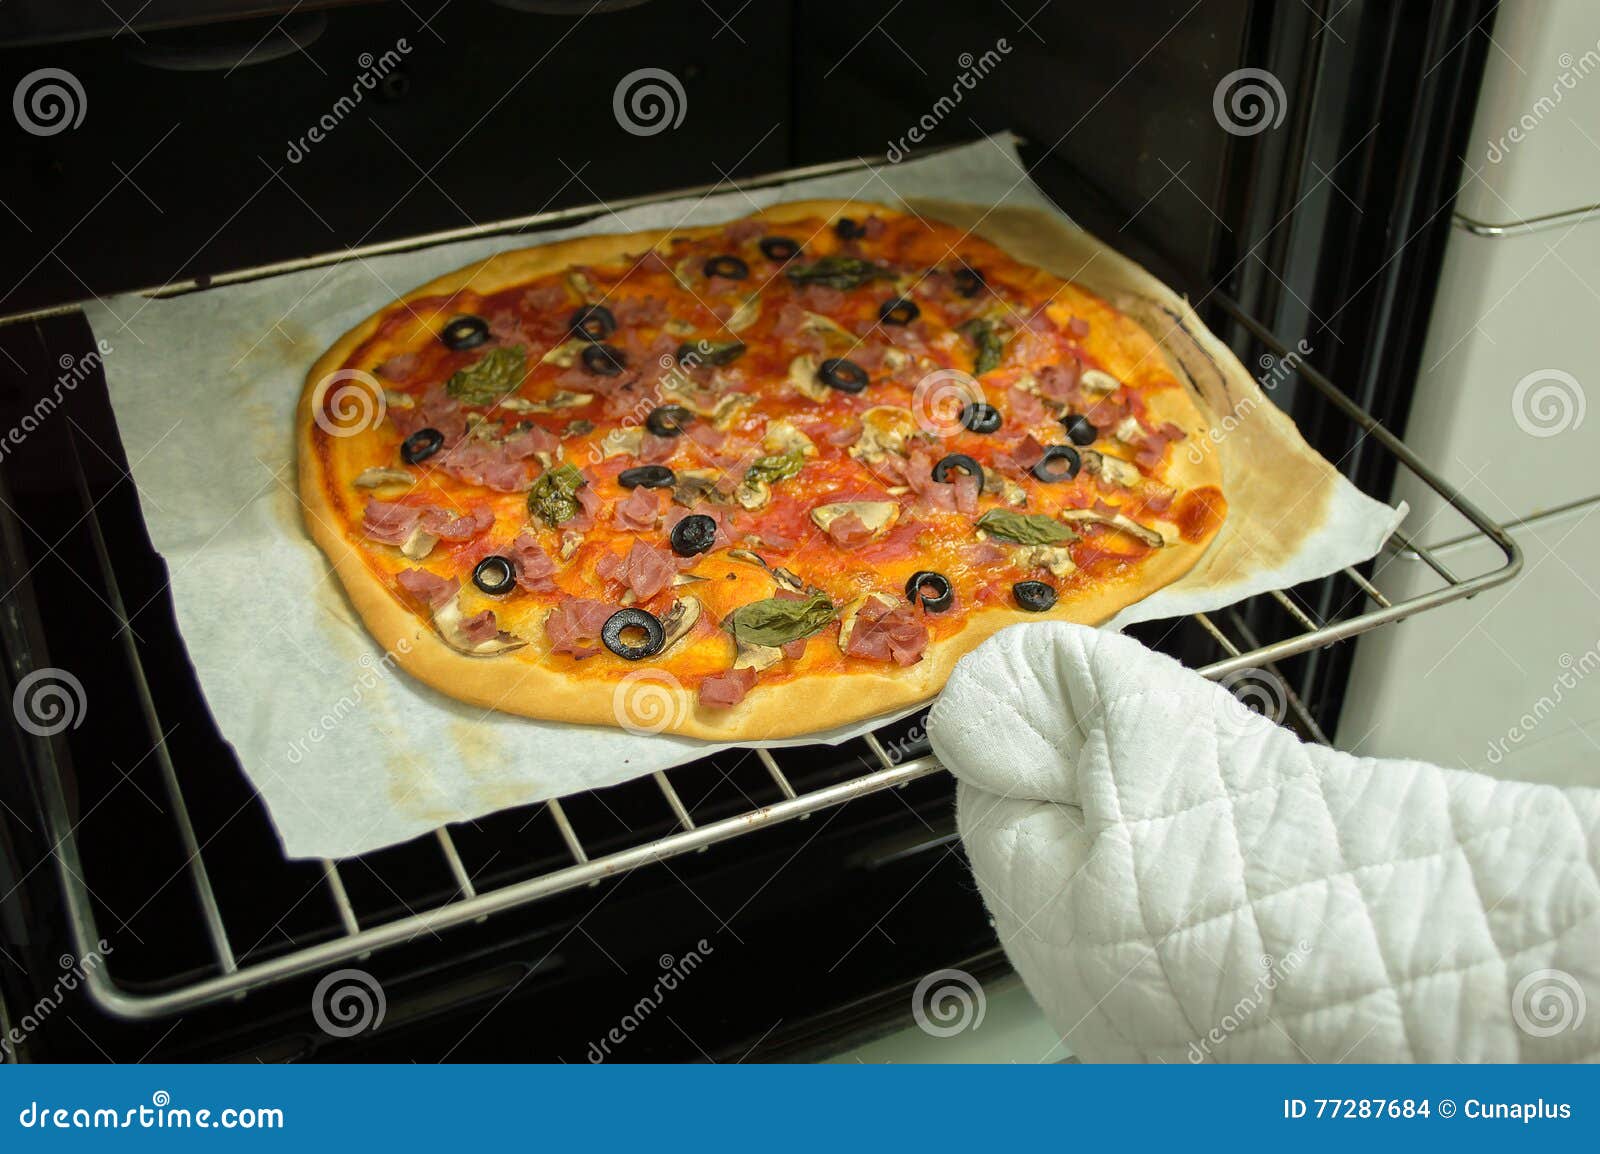 не пропекается пицца в духовке что делать фото 106